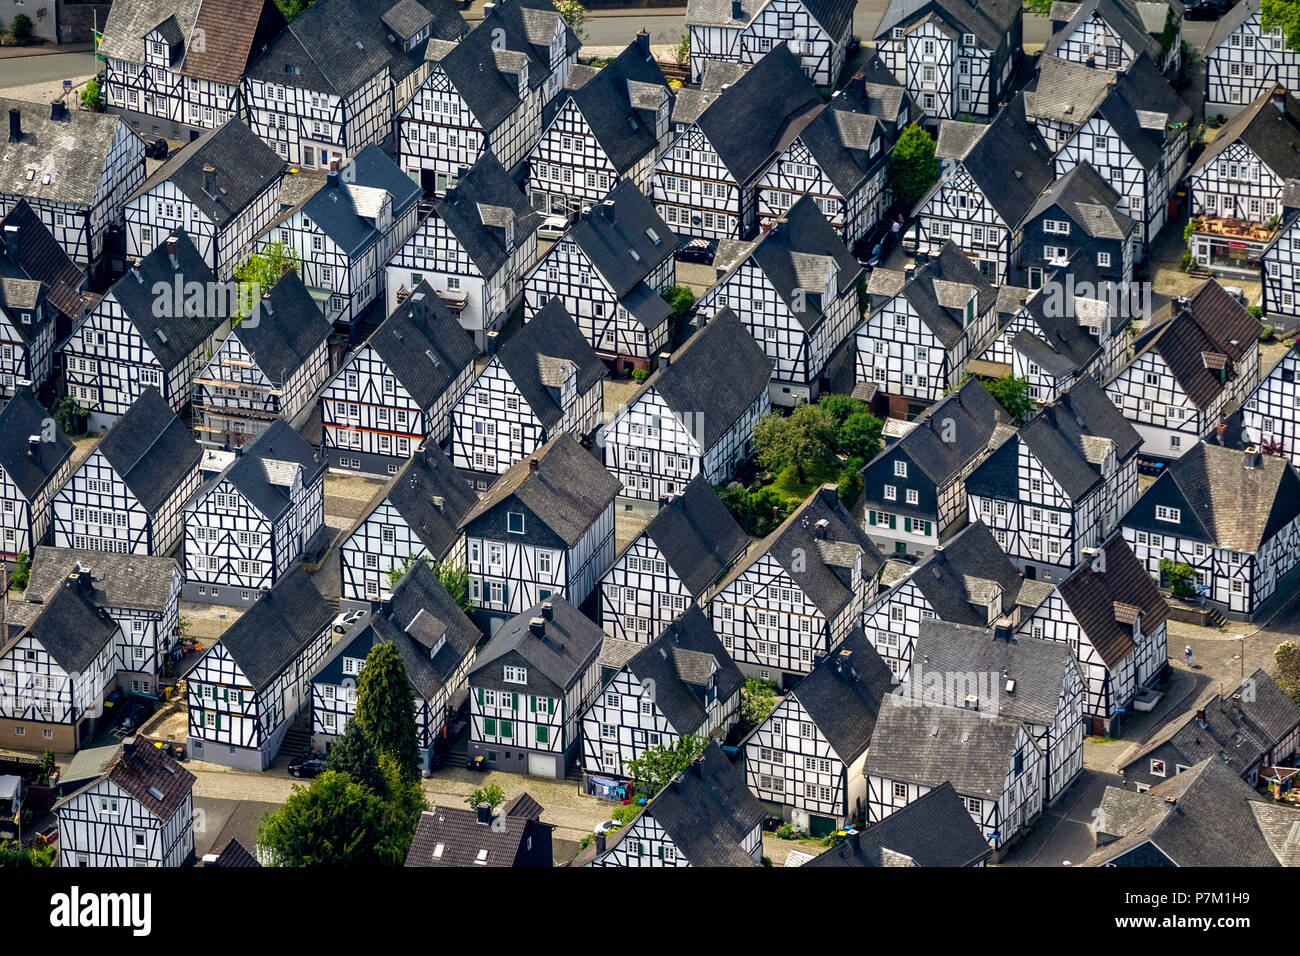 Maisons à colombages, Alte Vacances, centre-ville historique, Freudenberg, Düren, Rhénanie du Nord-Westphalie, Allemagne Banque D'Images